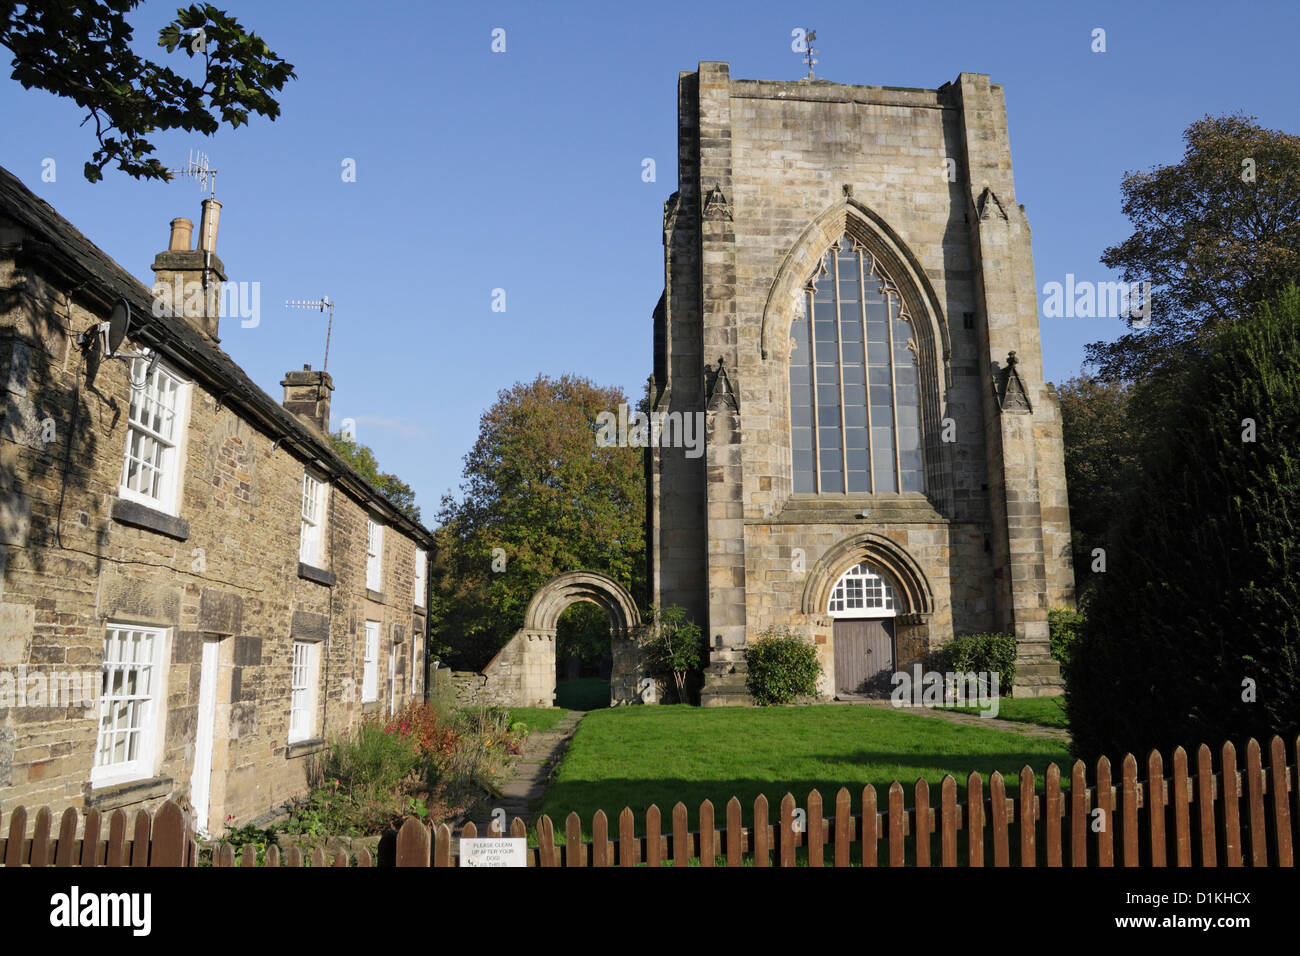 Les vestiges de l'abbaye de Beauchief à Sheffield, dans le Yorkshire, en Angleterre. Bâtiment classé de catégorie II* Banque D'Images